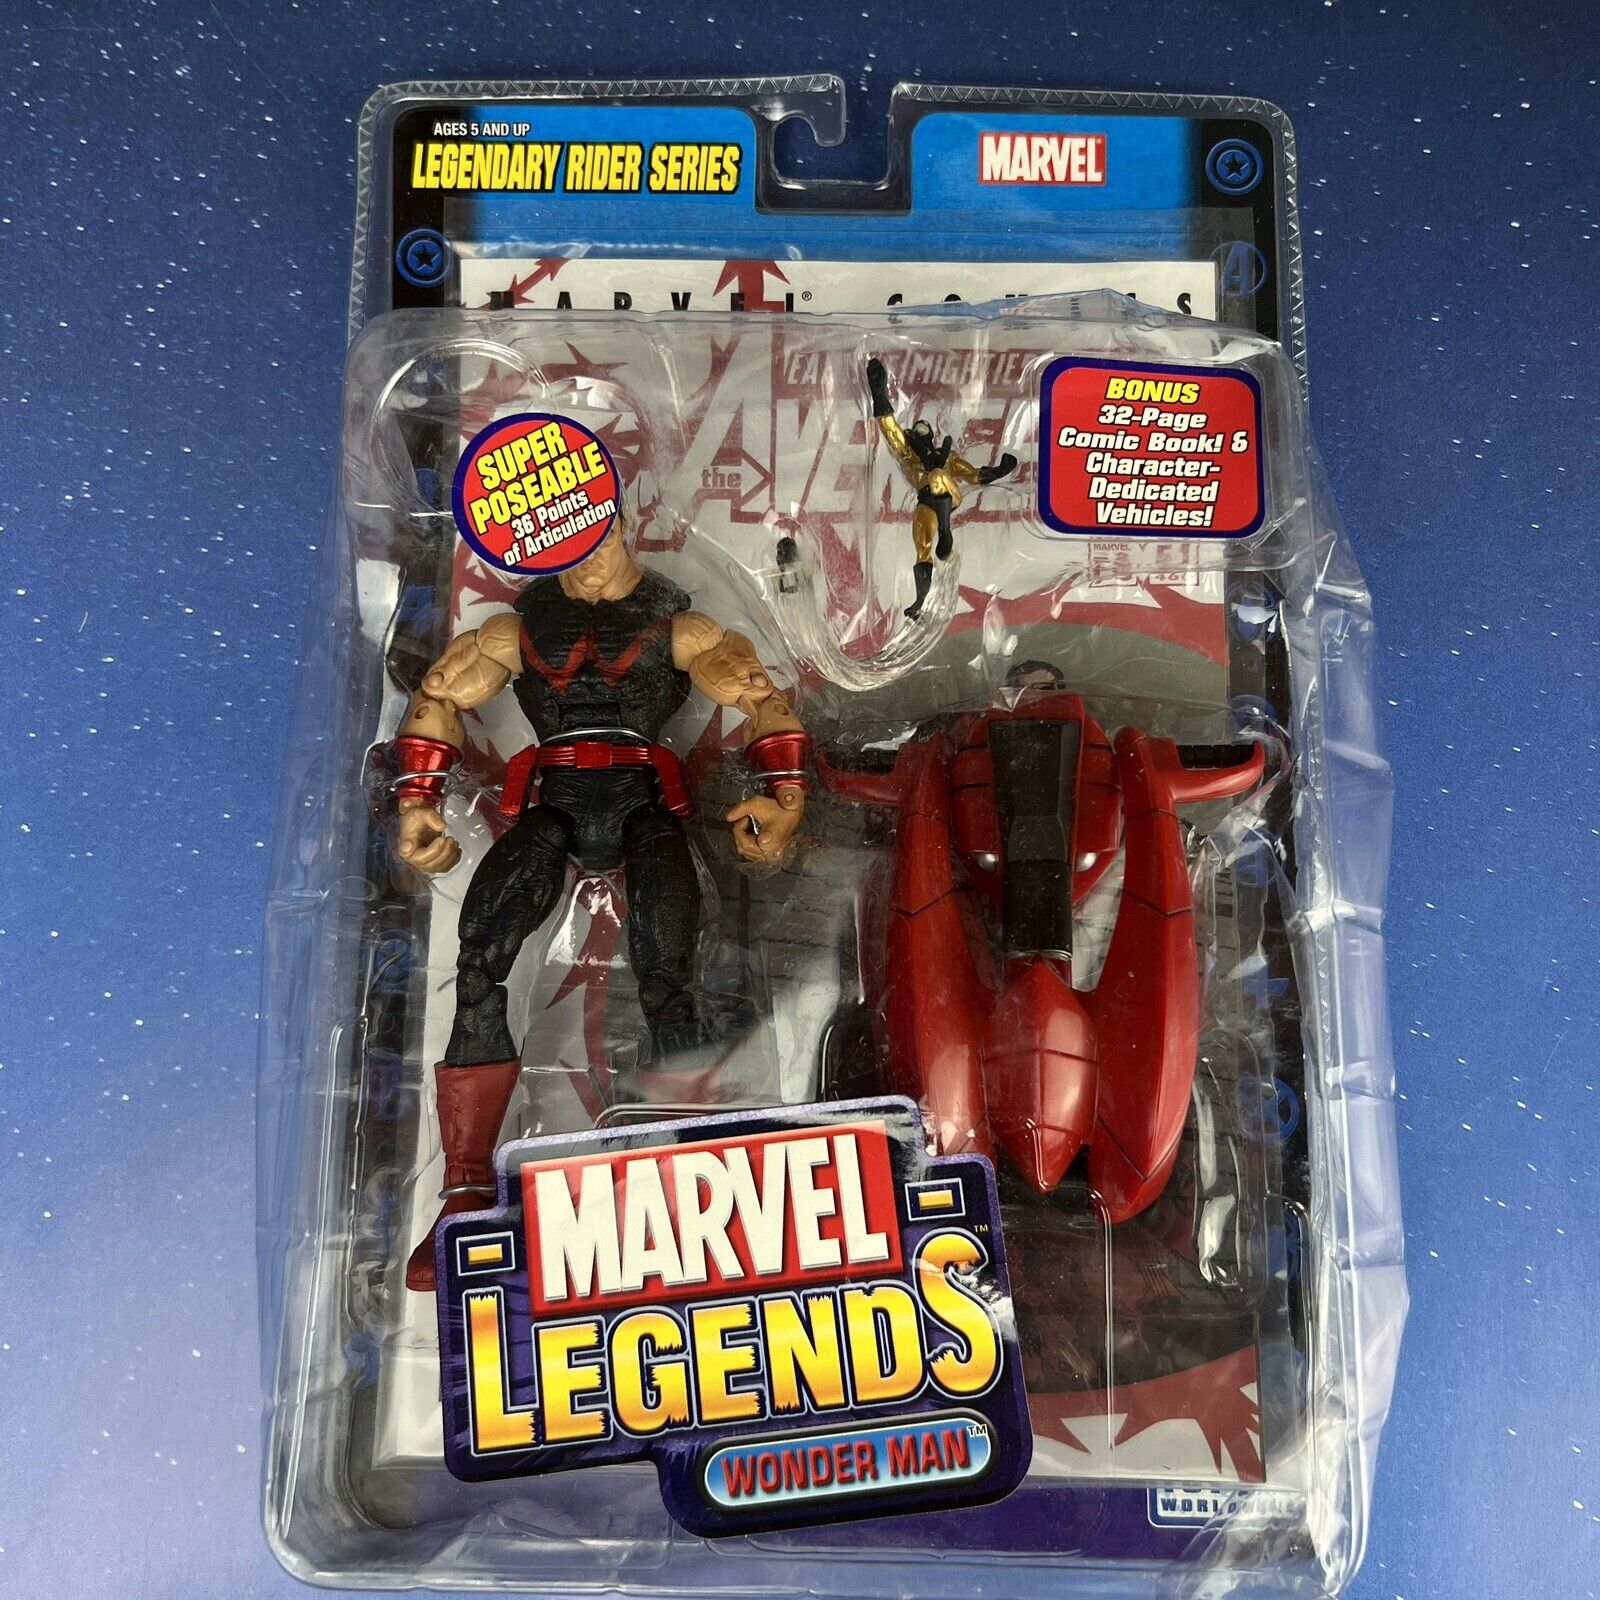 2005 Marvel Legends Wonder Man Legendary Rider Series Toy Biz